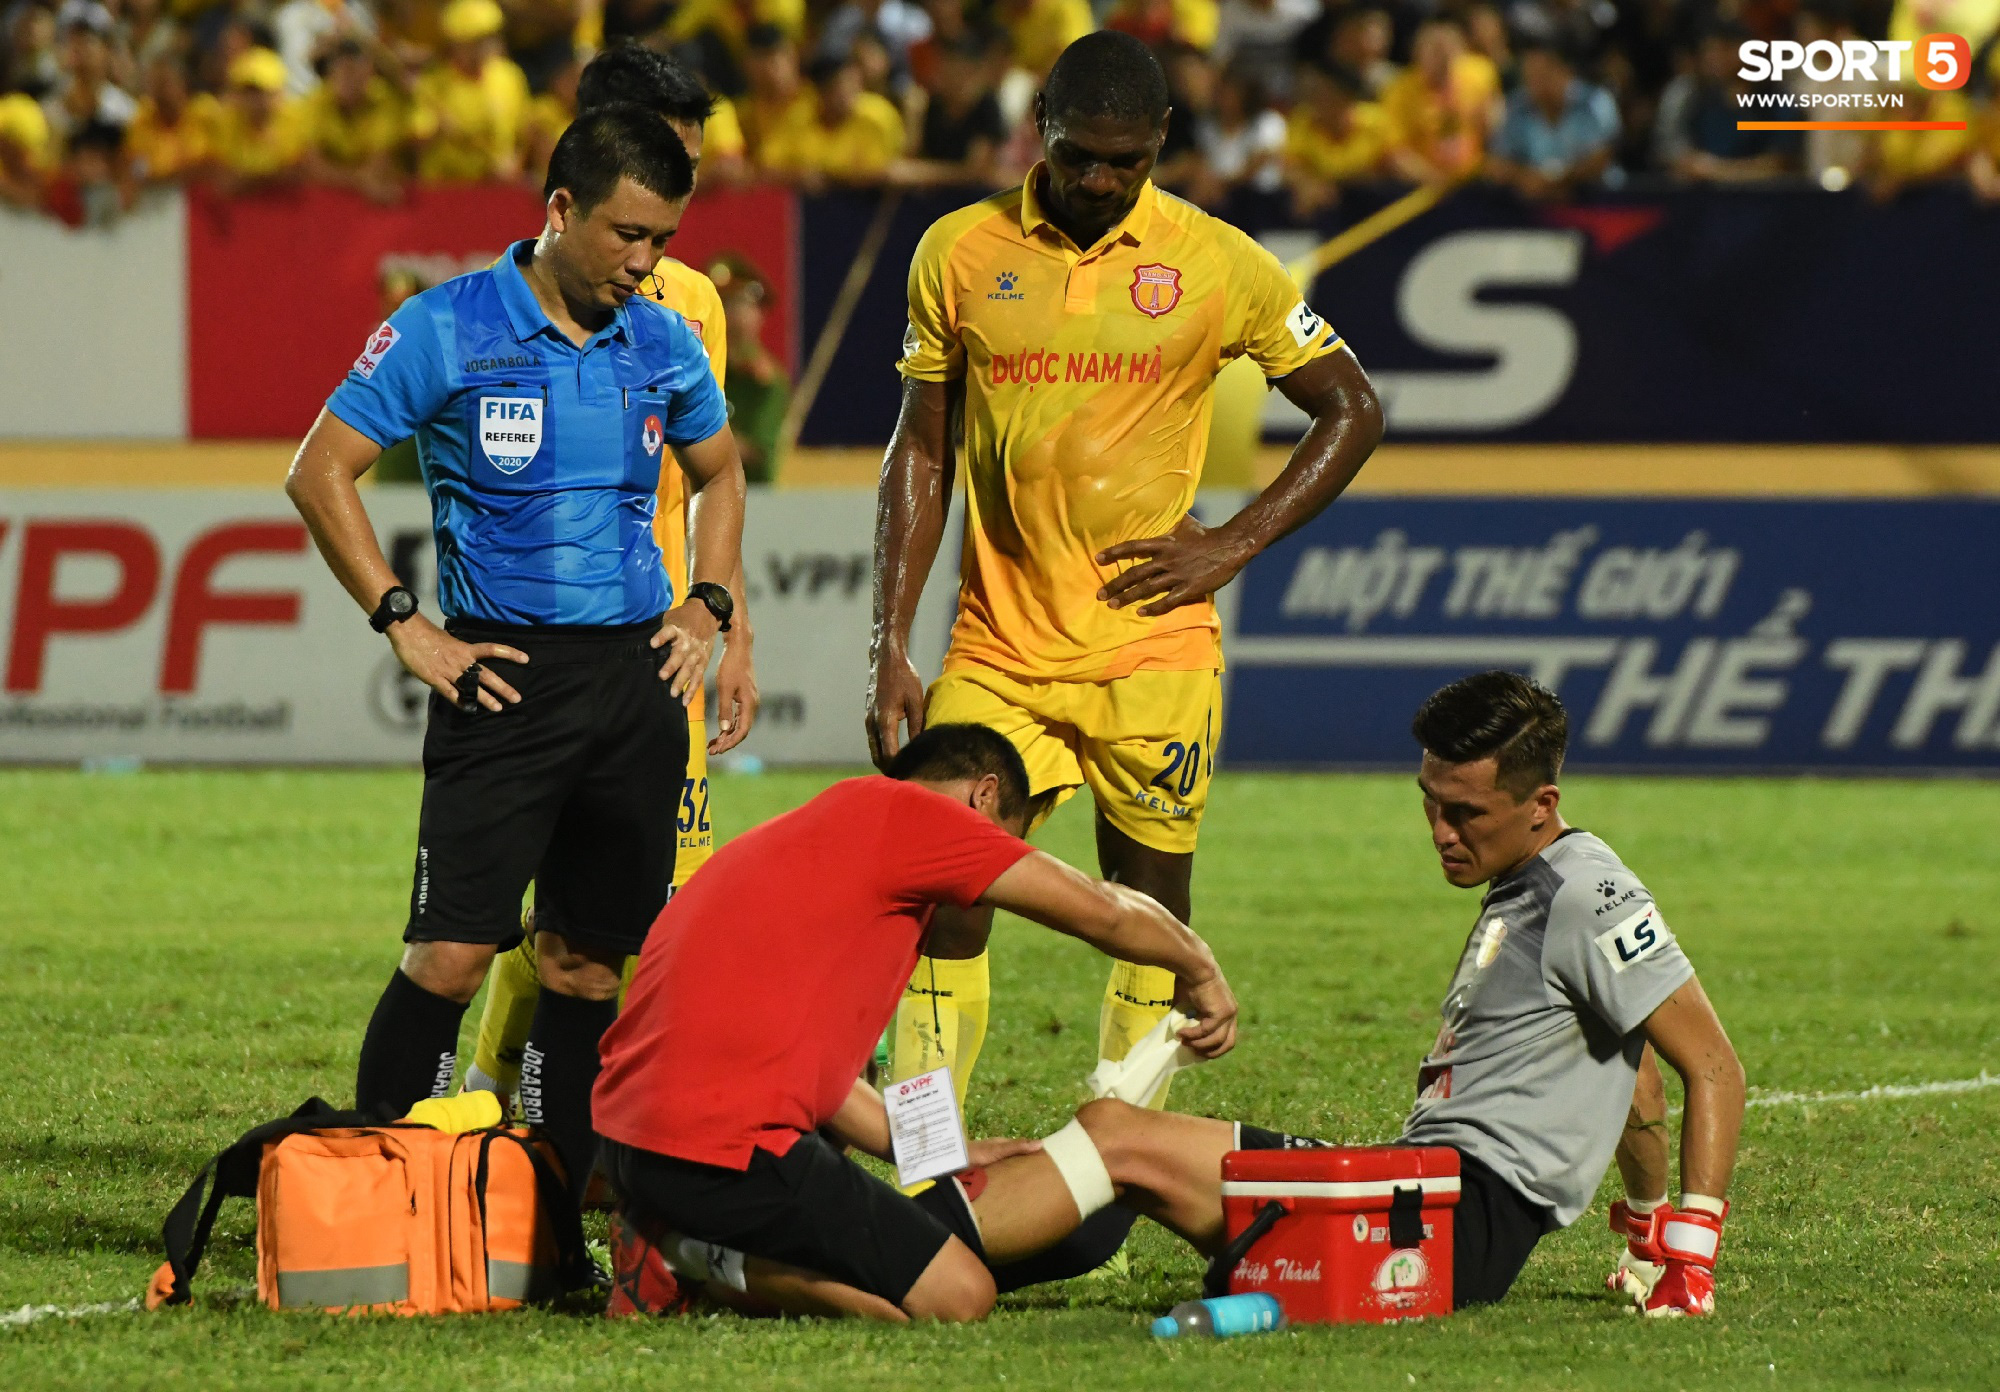  Đội trưởng Quảng Nam phát cáu vì đối thủ tự nhiên nằm sân, còn đội ngũ y tế thì quá chậm chạm - Ảnh 5.